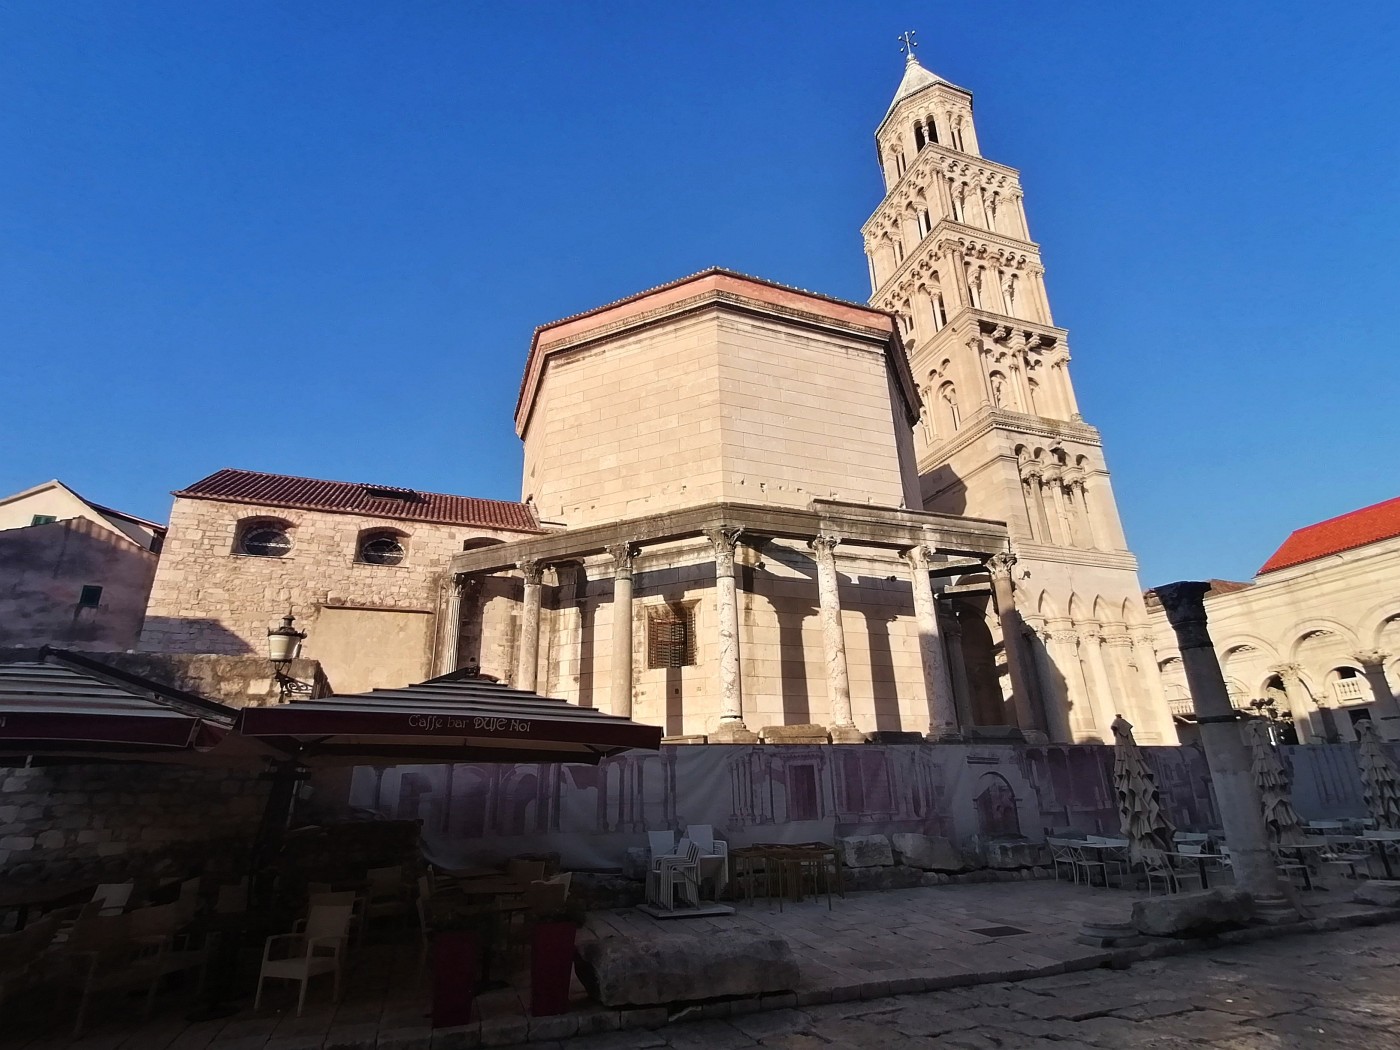 Split - Katedrala svetog Duje a Zvonik svetog Duje - Katedrála sv. Domnia a Zvonice sv. Domnia